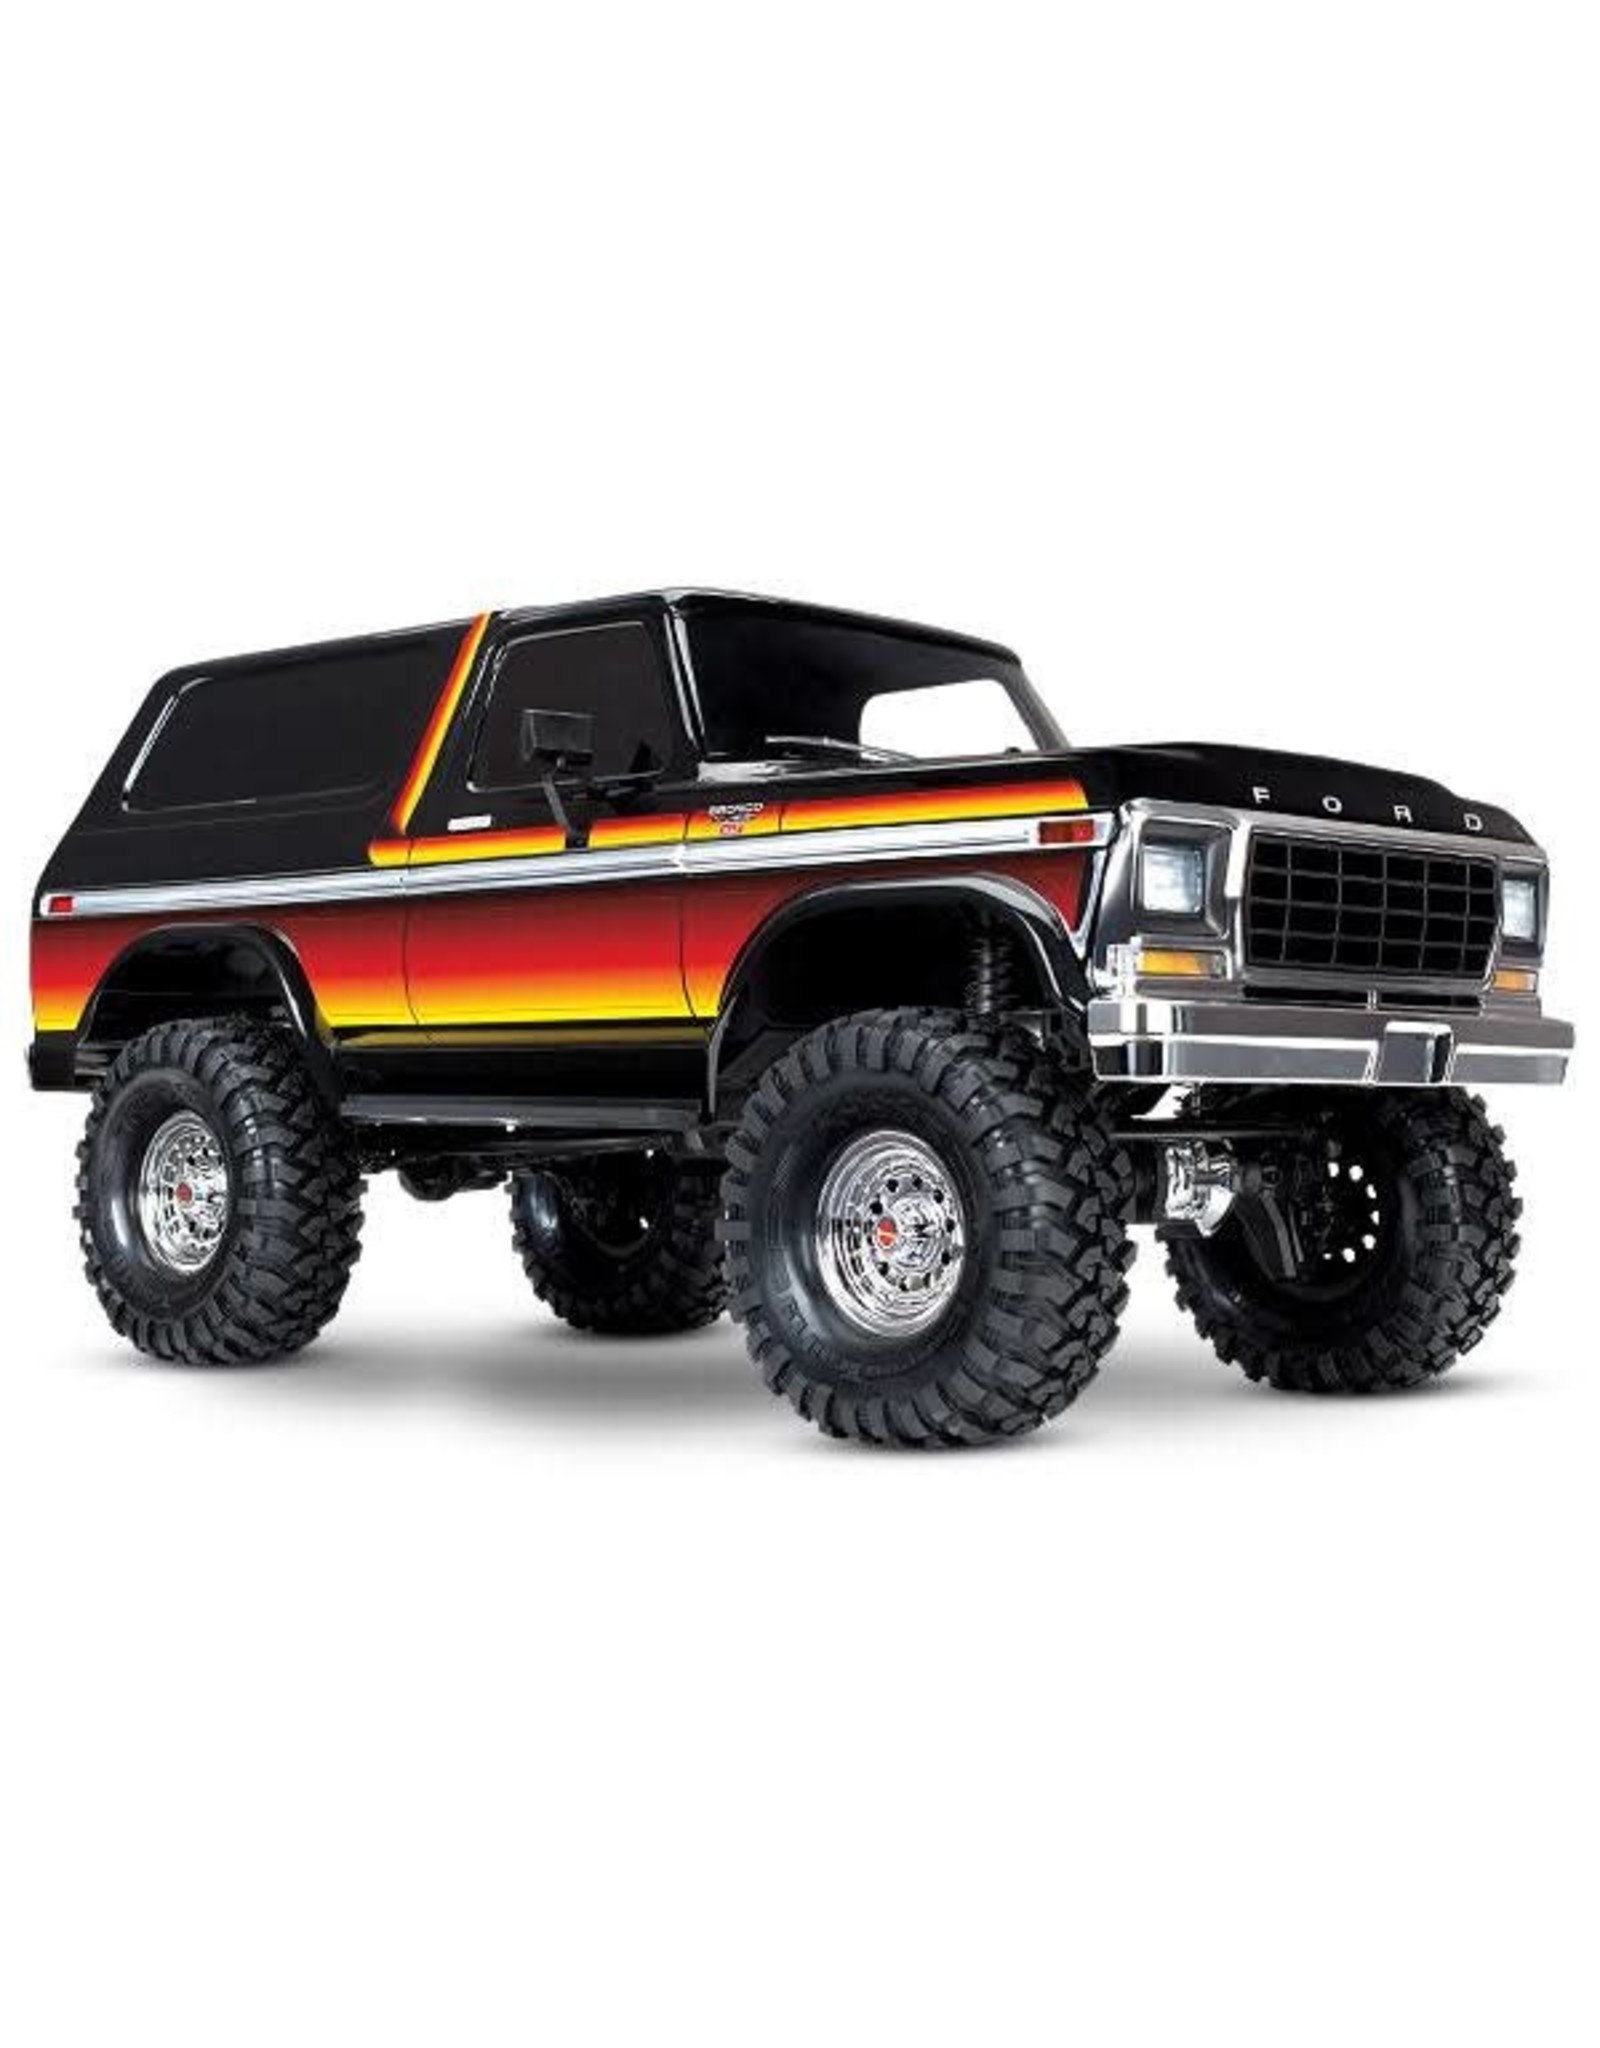 Traxxas TRX4 W/Bronco Body 1/10 4WD, Sunset